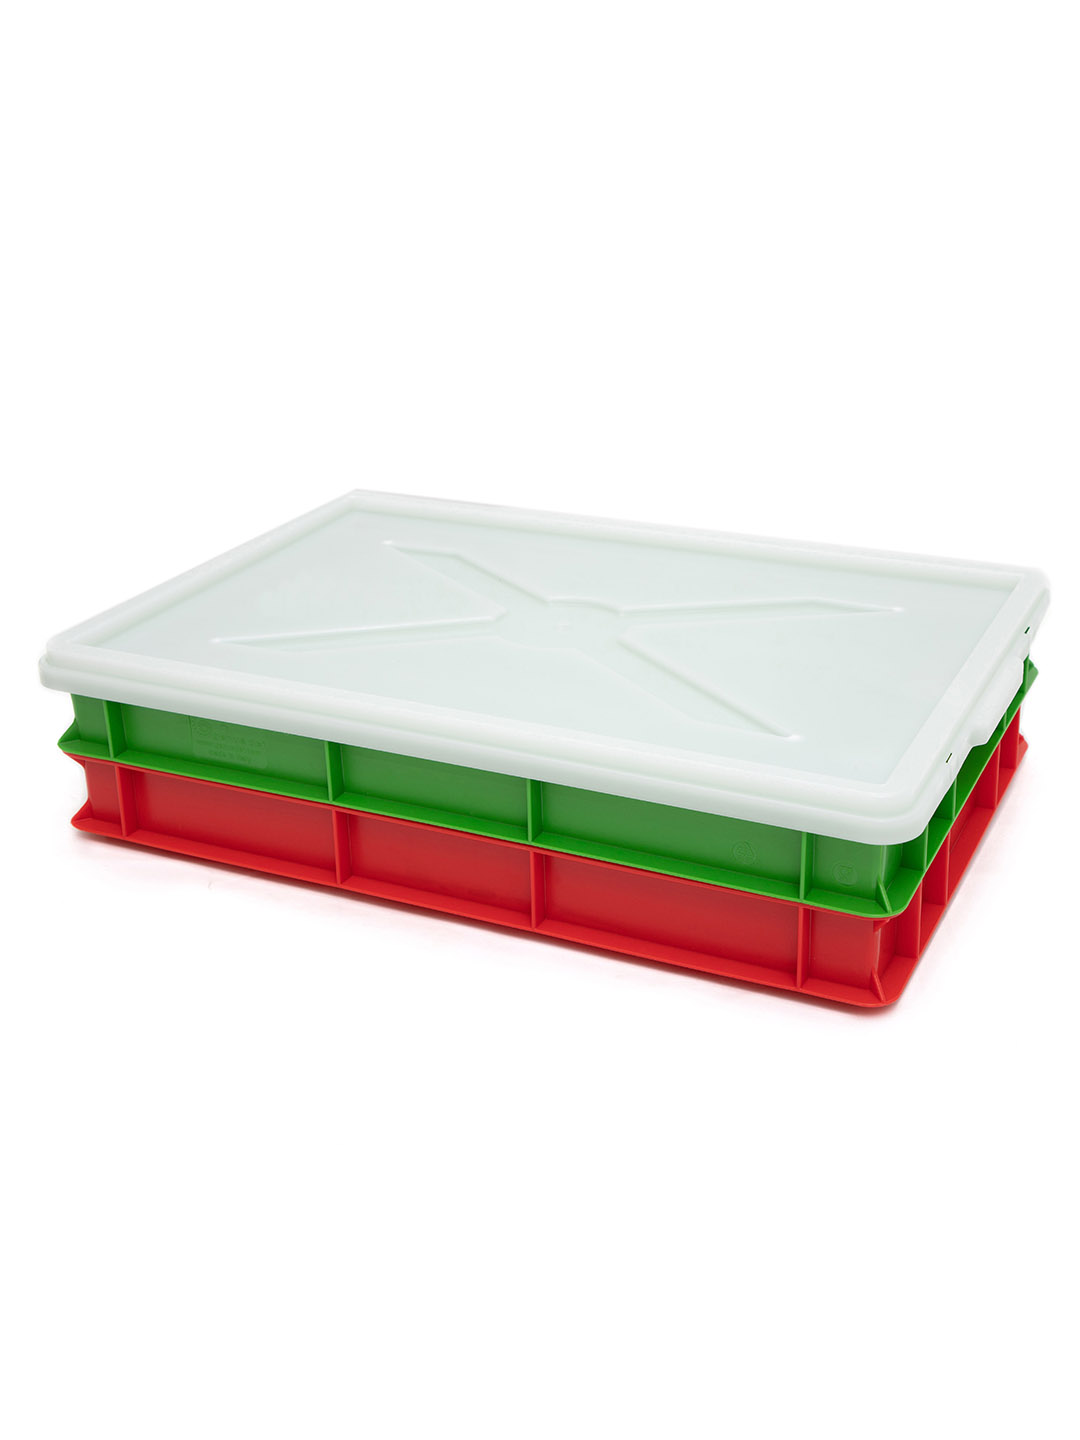 Contenitore in Plastica Rinforzata per Lievitazione Impasto Pizza cm. 42,5  x 63 x 21,5h 